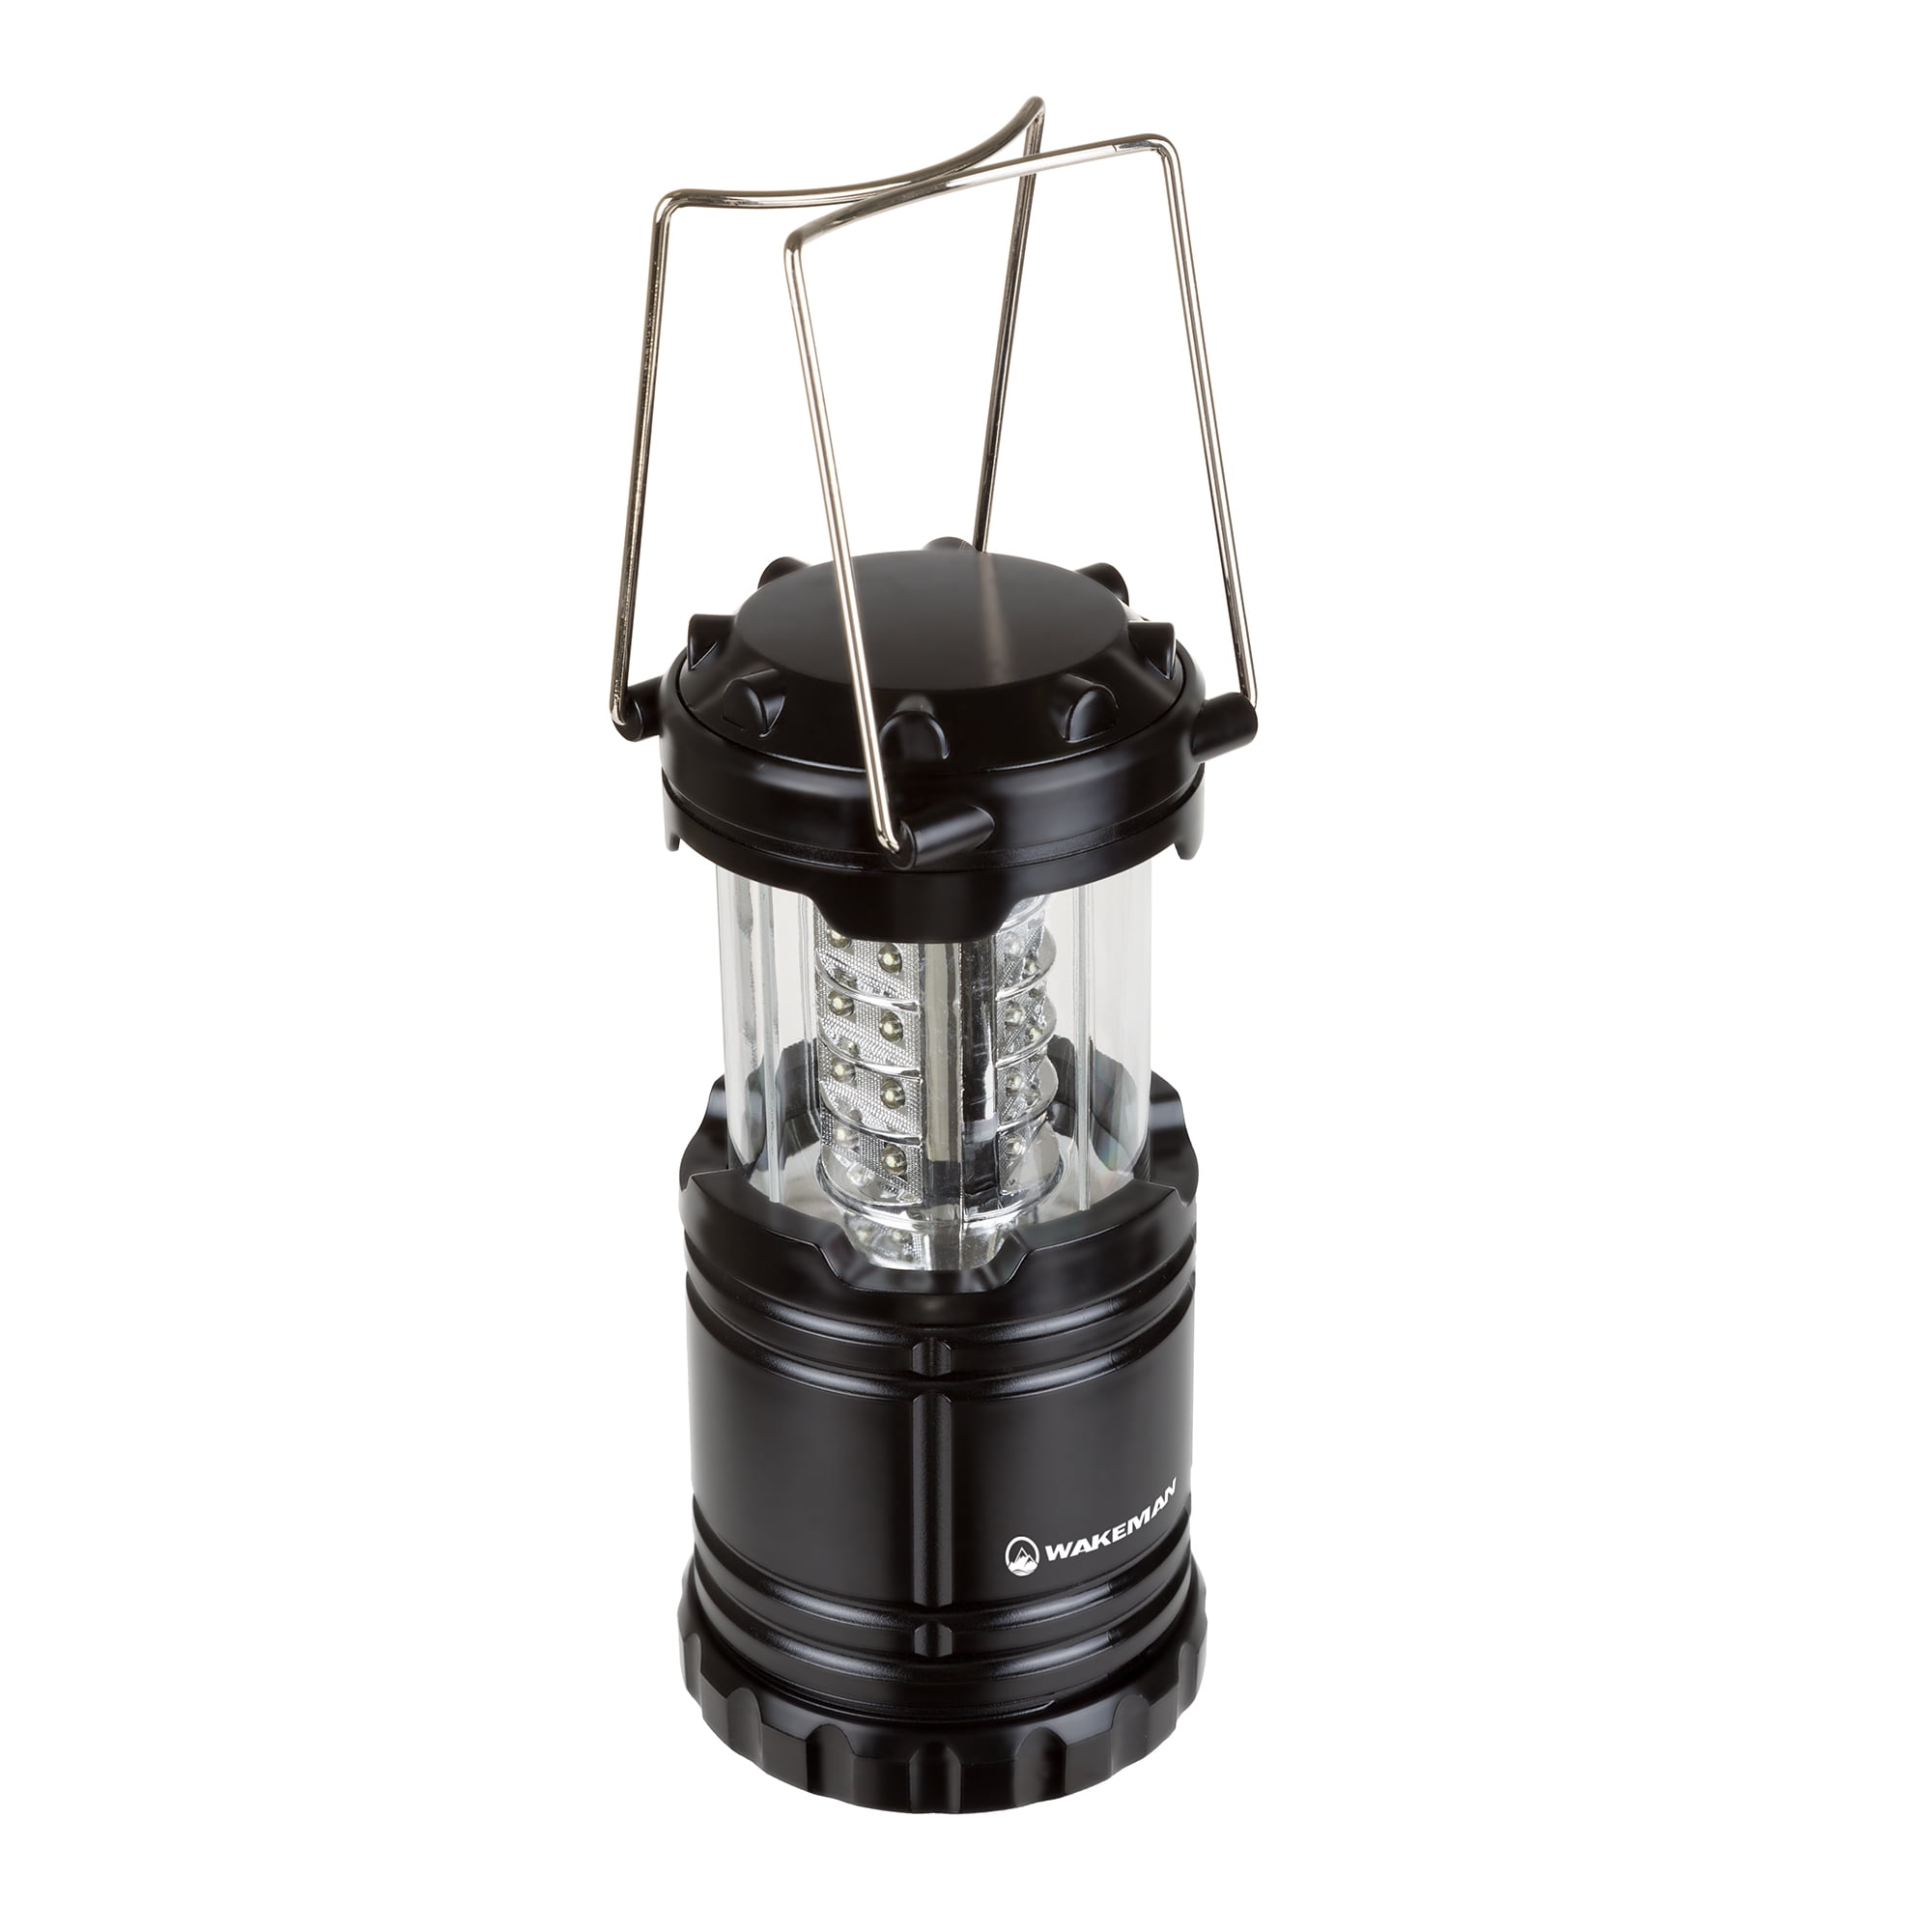 Propane Lanterns For Camping Portable Lantern Outdoor Camping Kerosene Lamp  Outage Urgency Home Use Lantern Camping - AliExpress